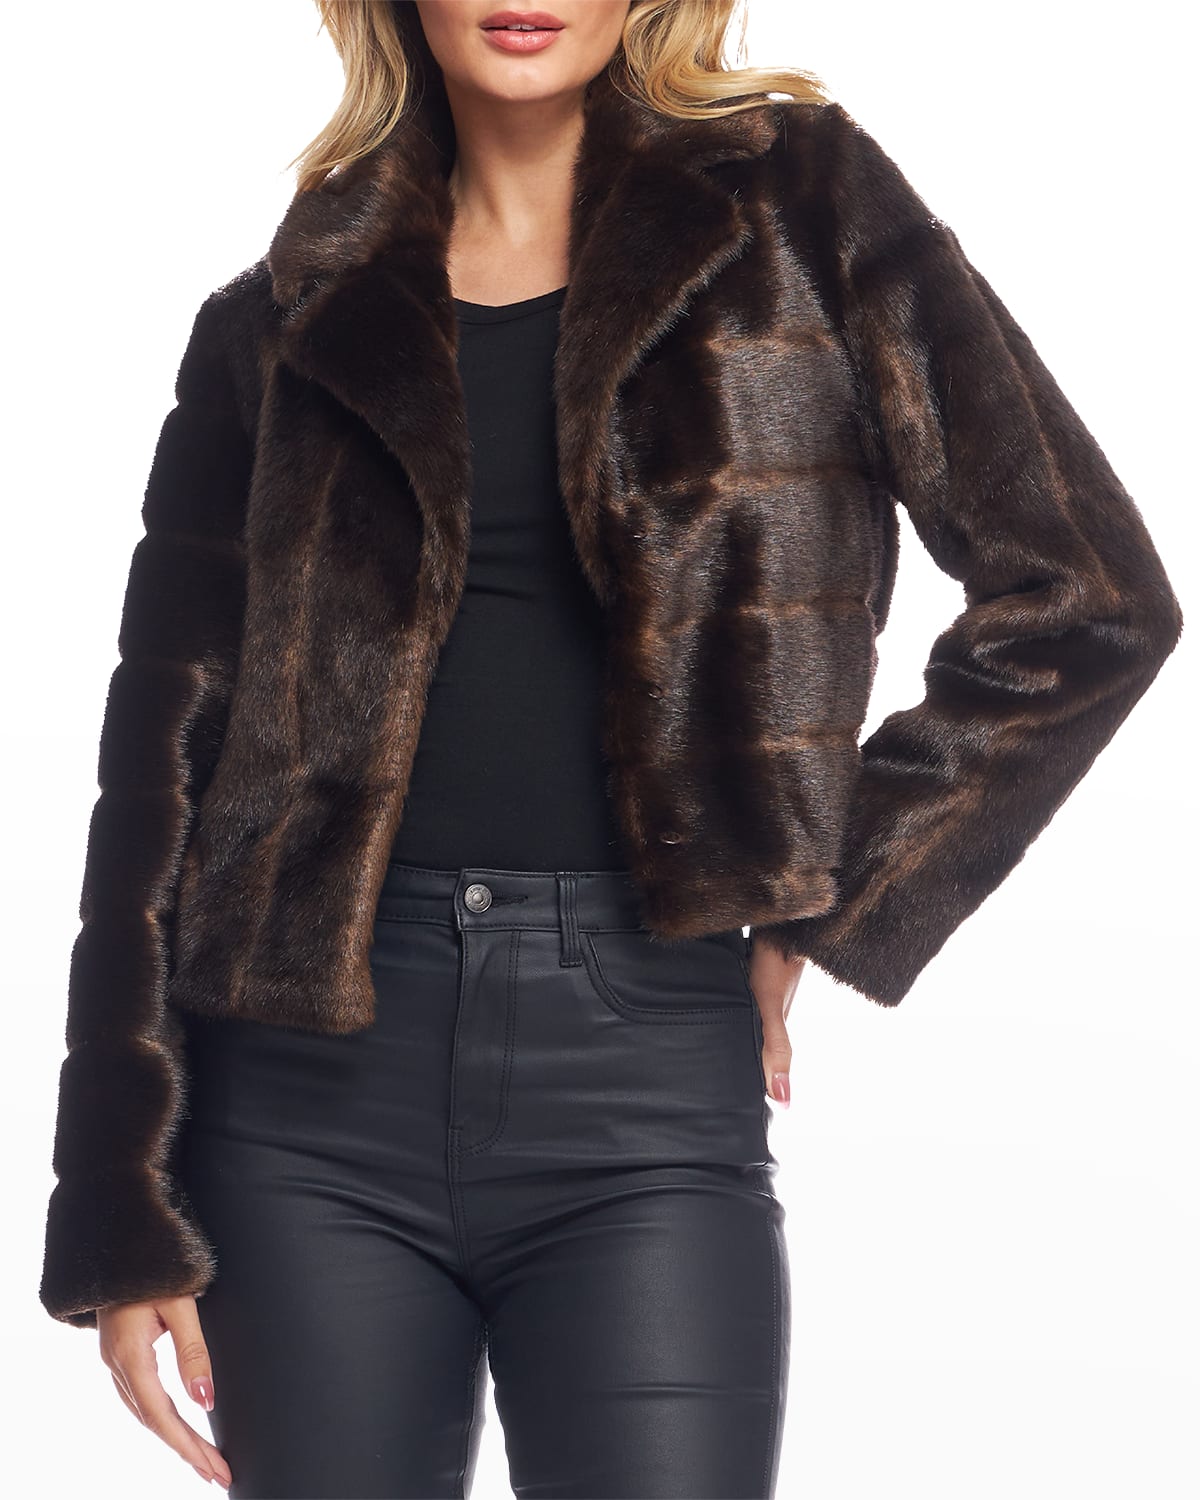 Fabulous Furs Maven Faux Fur Mink Jacket